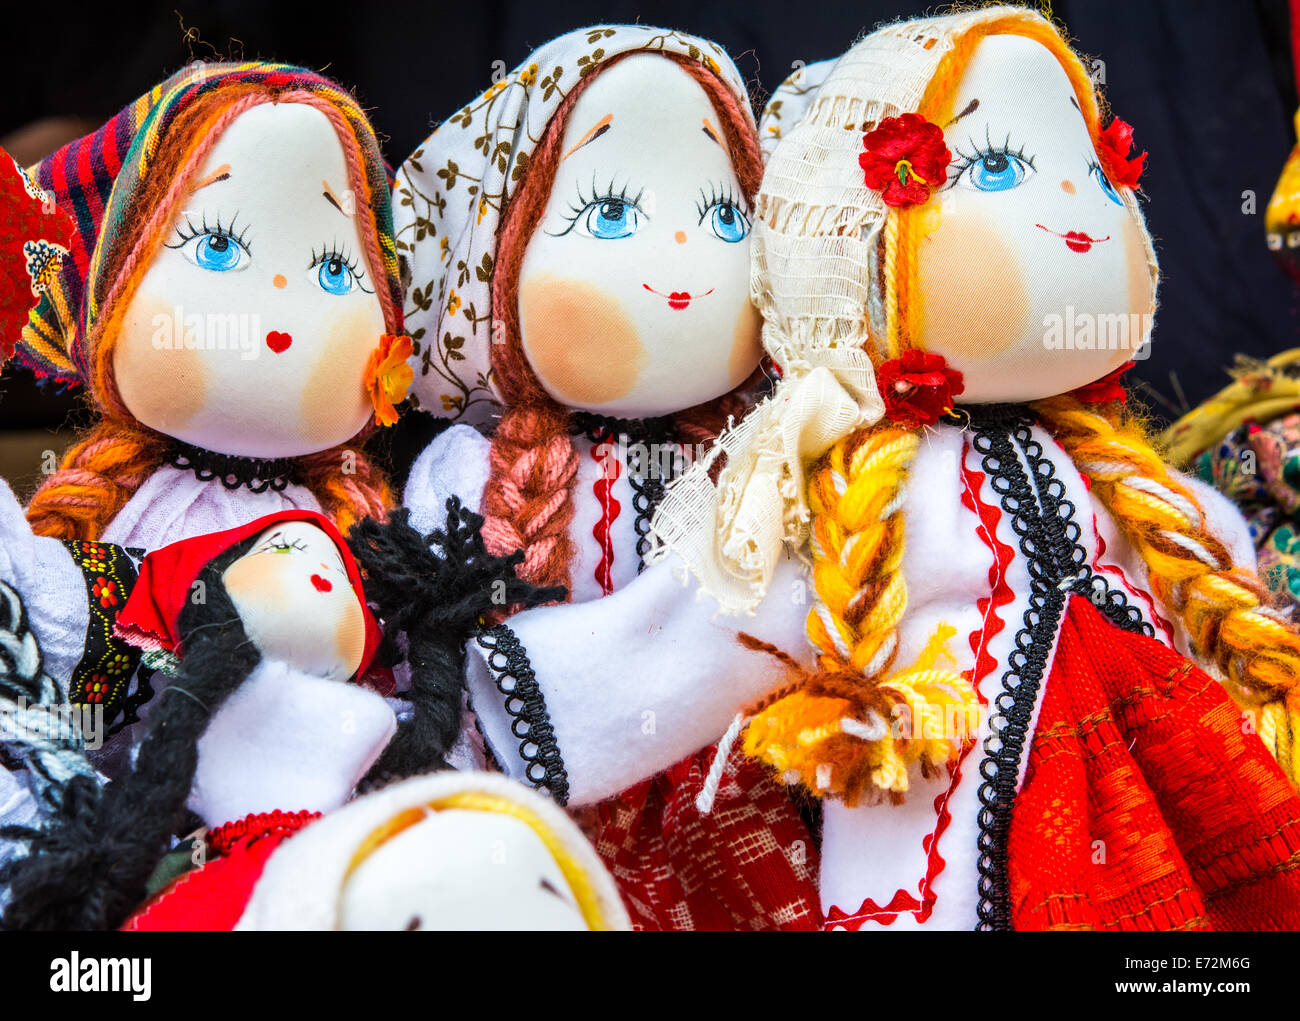 Schöne Mädchen Spielzeug: rumänische handgefertigte Puppen in Tradiditional Kostüm Stockfoto